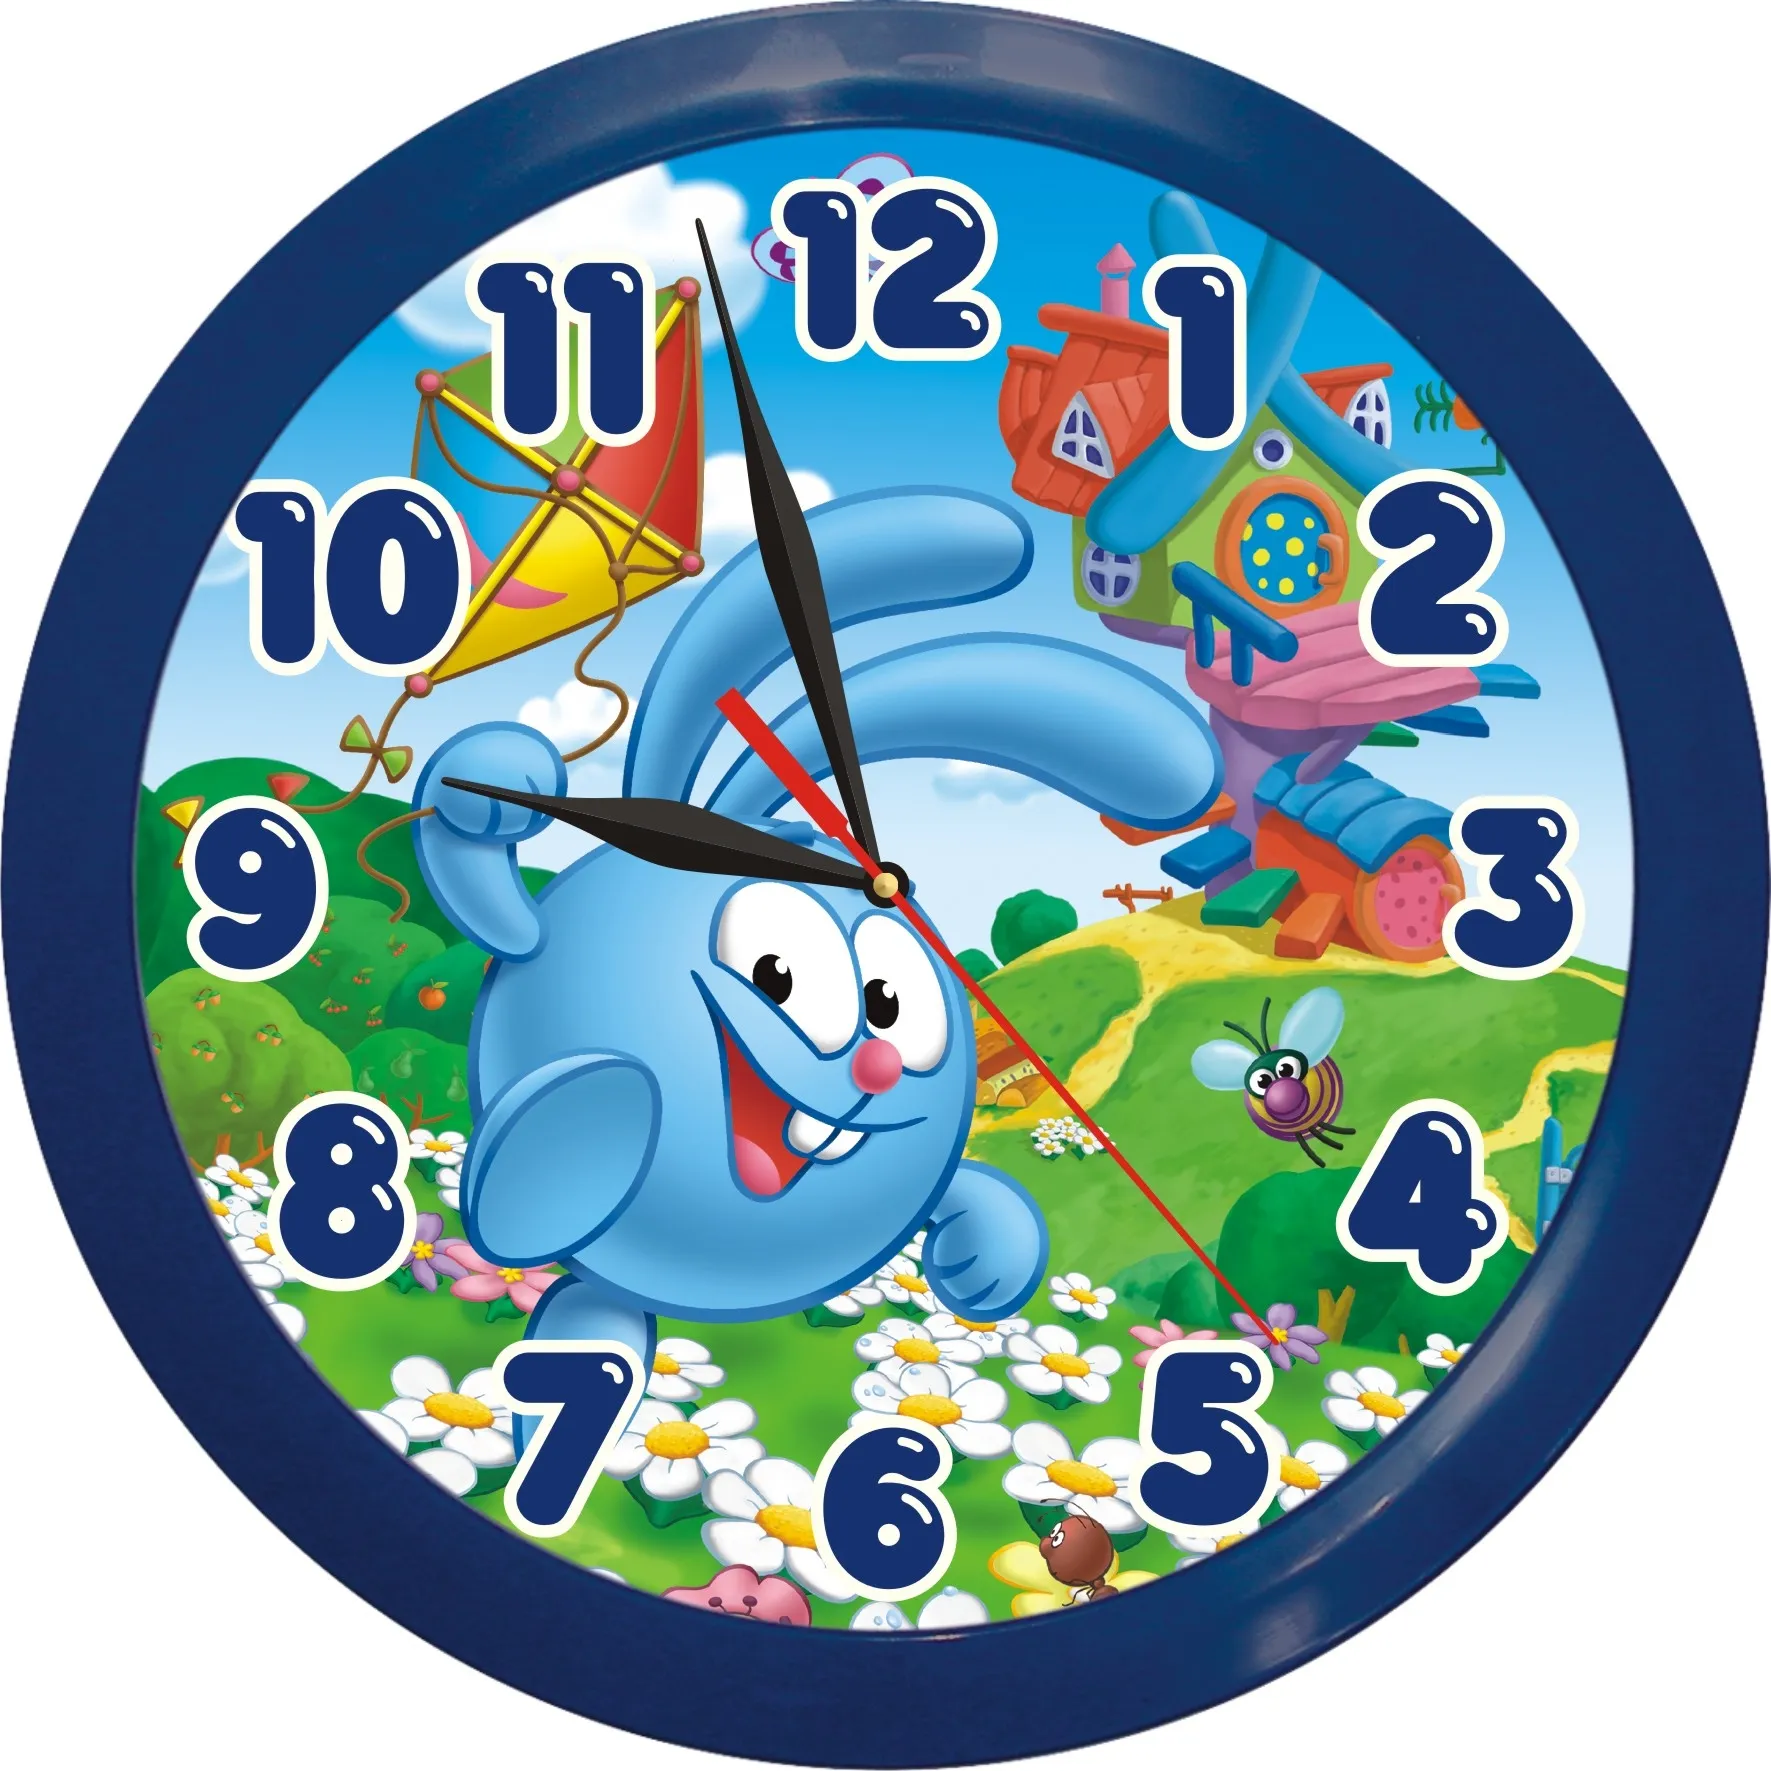 Цифры на часах разные. Смешарики часы Смешарики часы Смешарики часы Смешарики часы. Часы круглые детские. Часы для детского сада. Часы настенные для детей.